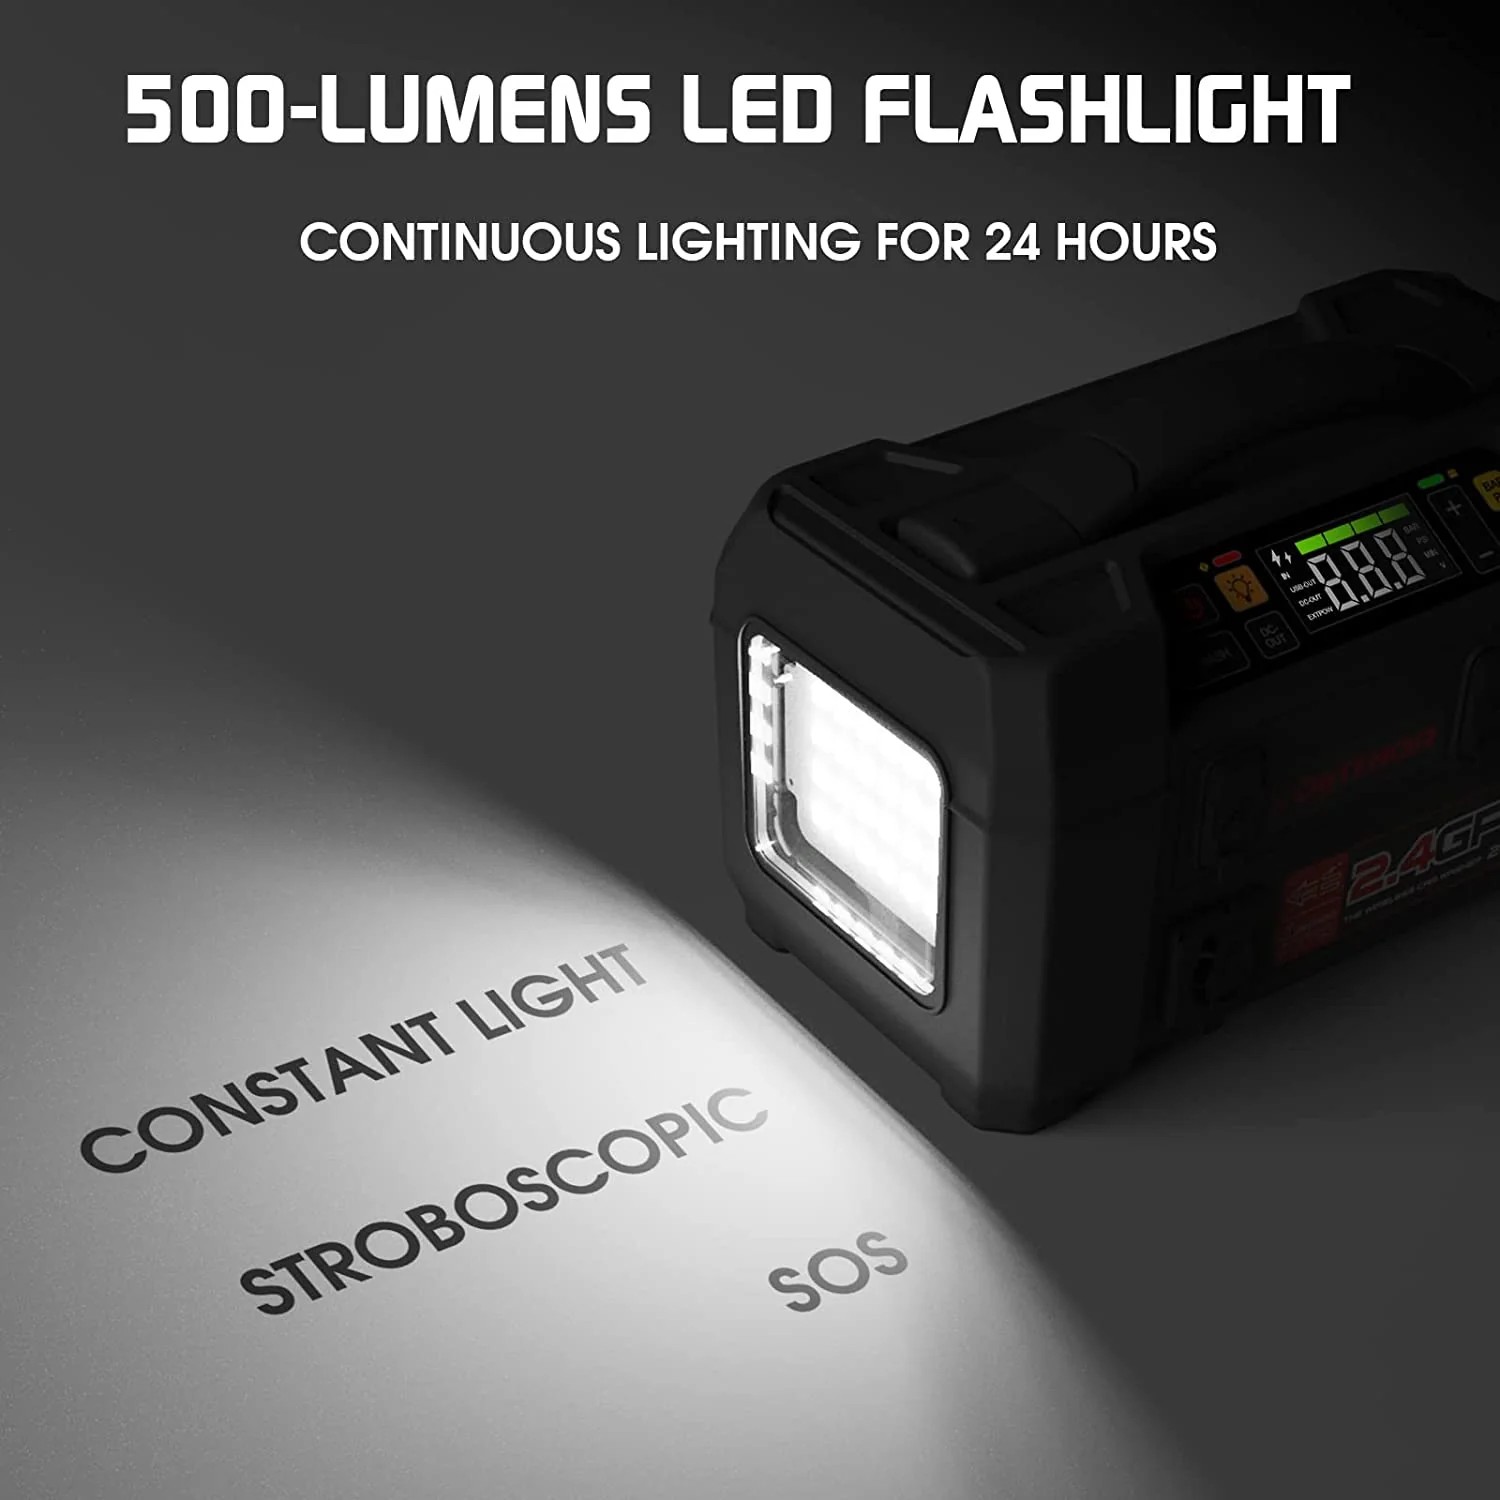 автомобильный стартер 500 люмен светодиодный фонарик + компрессор и блок питания